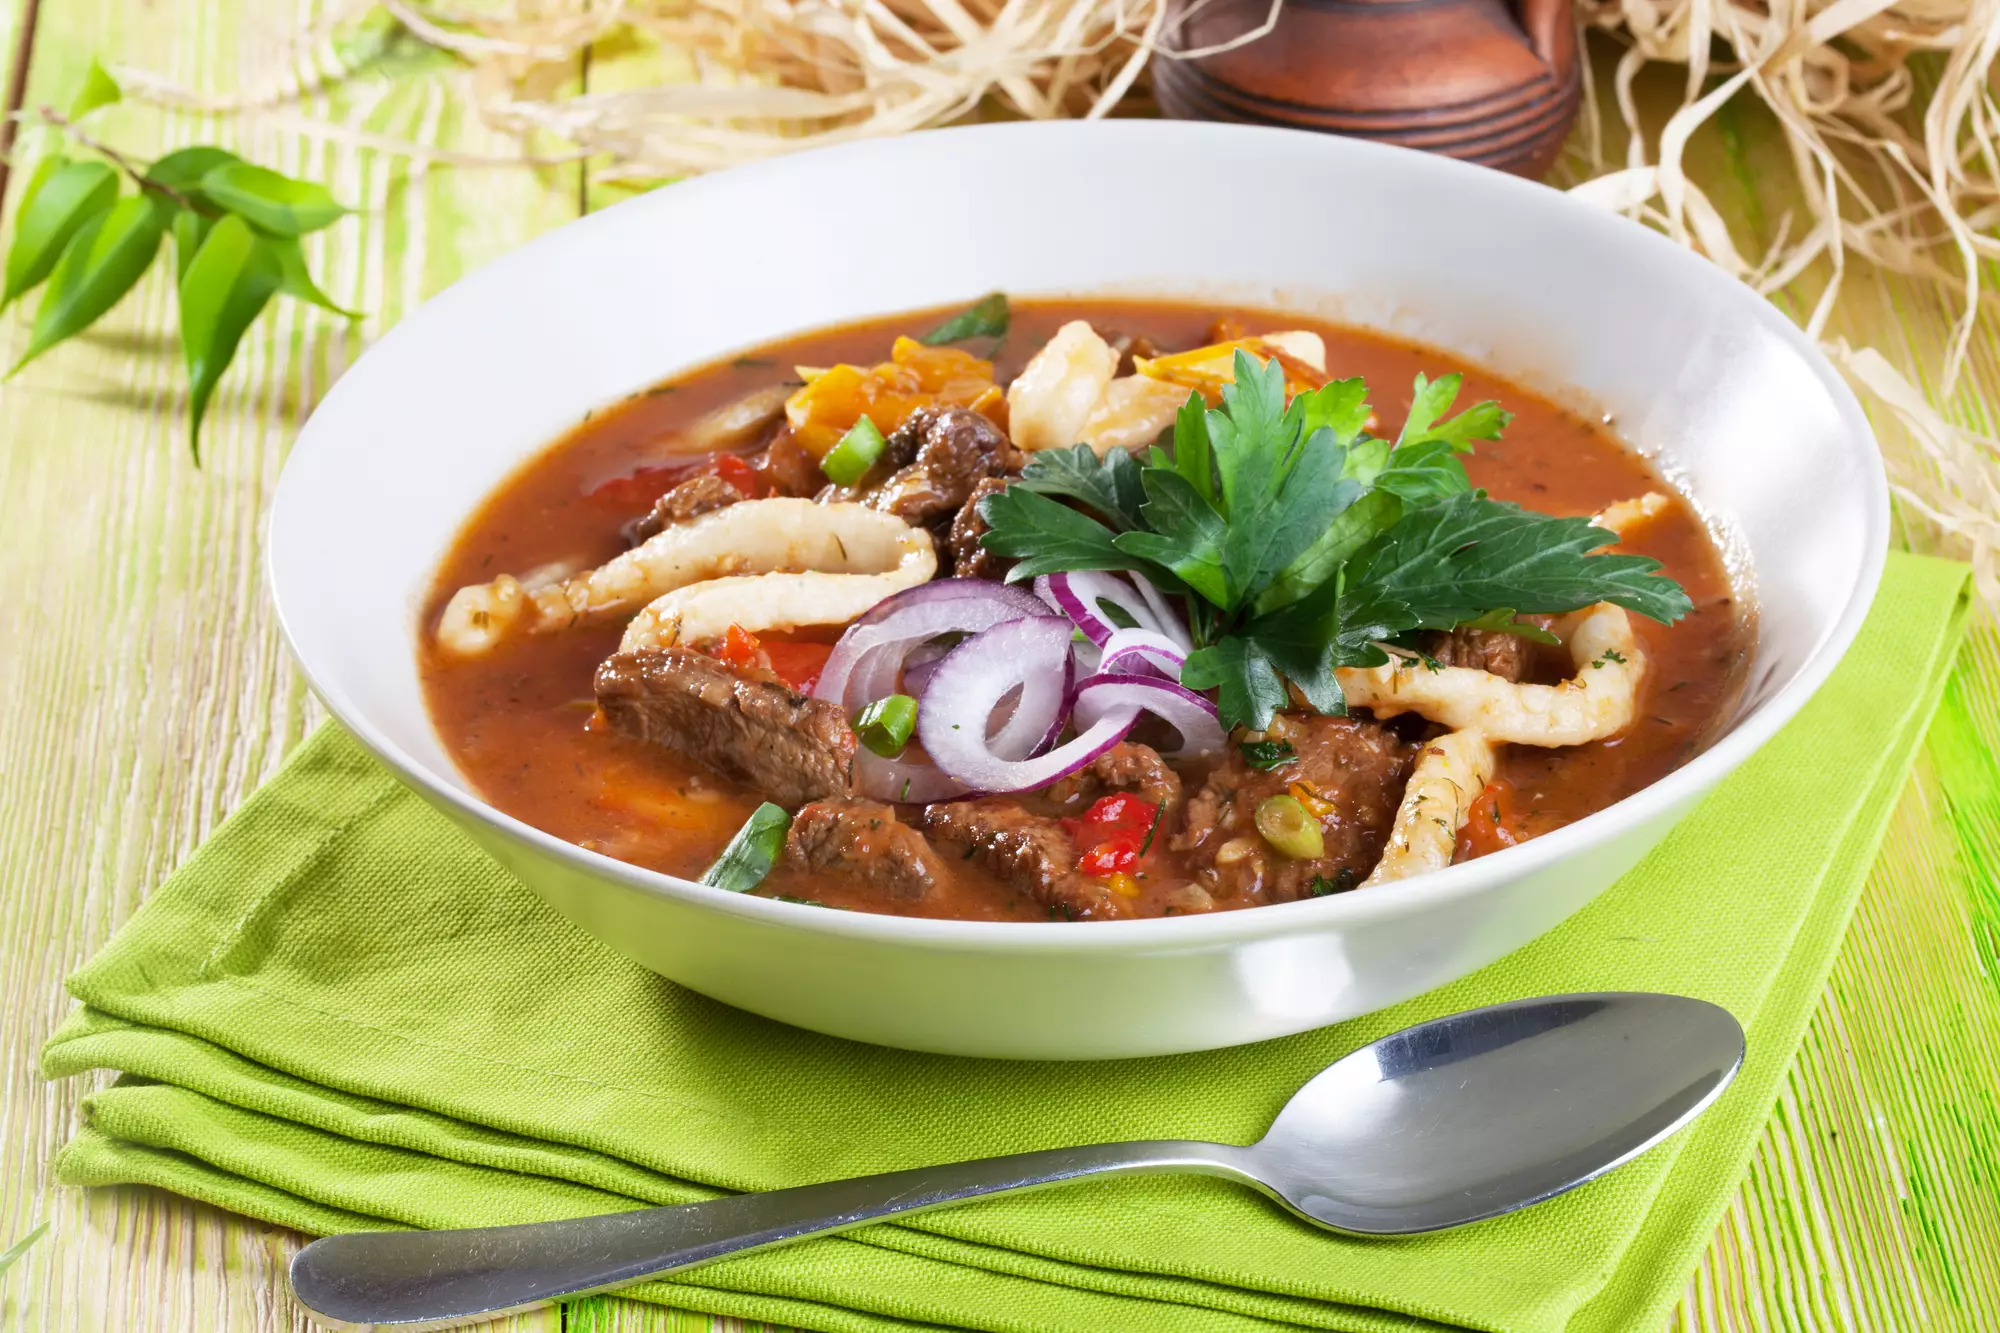 Лагман, пошаговый рецепт с фотографиями – Узбекская кухня: Супы. «Еда»